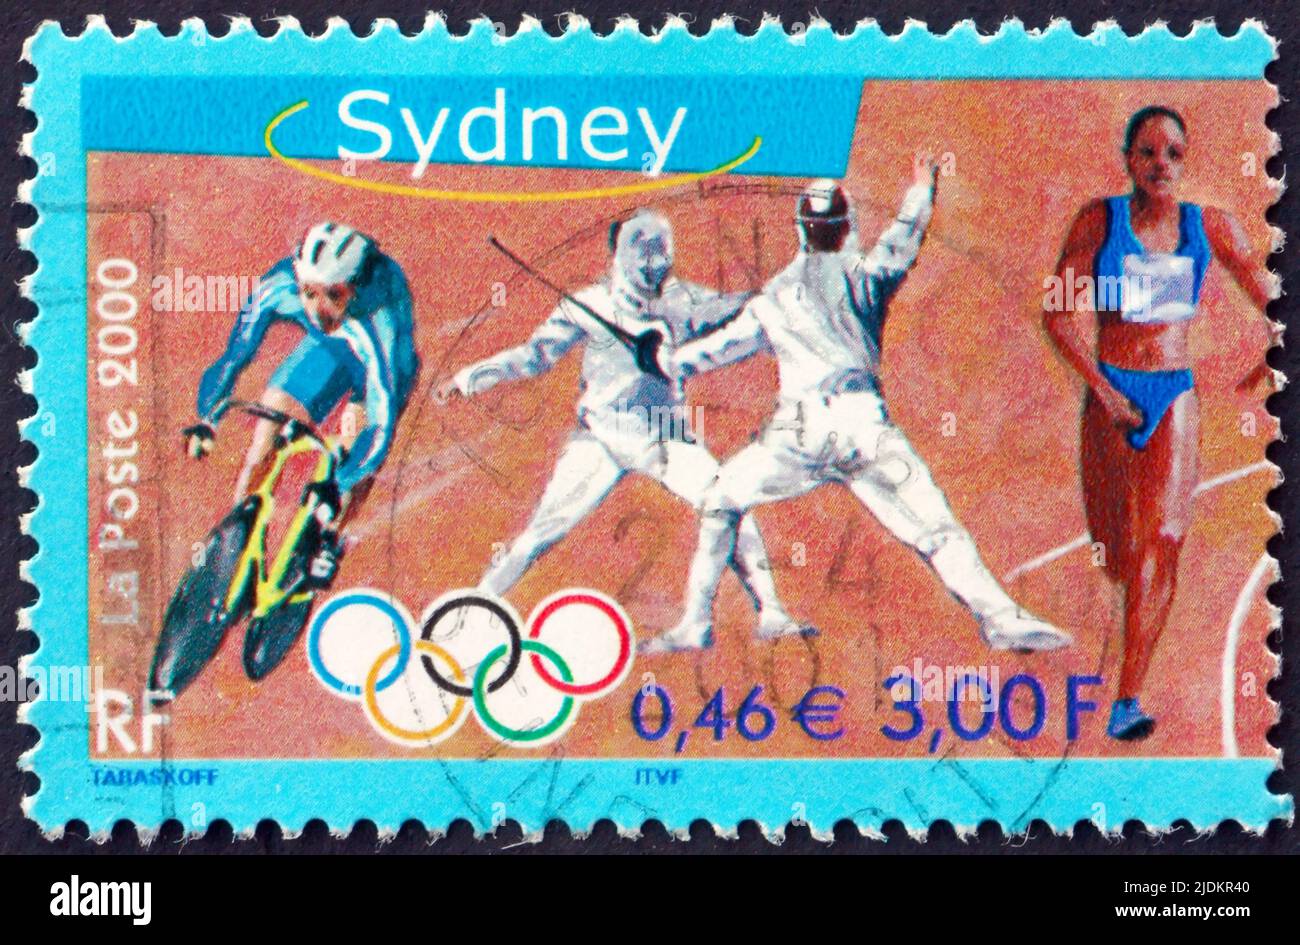 FRANCE - VERS 2000 : un timbre imprimé en France montre Cyclisme, Escrime, Relais Racer, Jeux Olympiques d'été 2000, Sydney, vers 2000 Banque D'Images